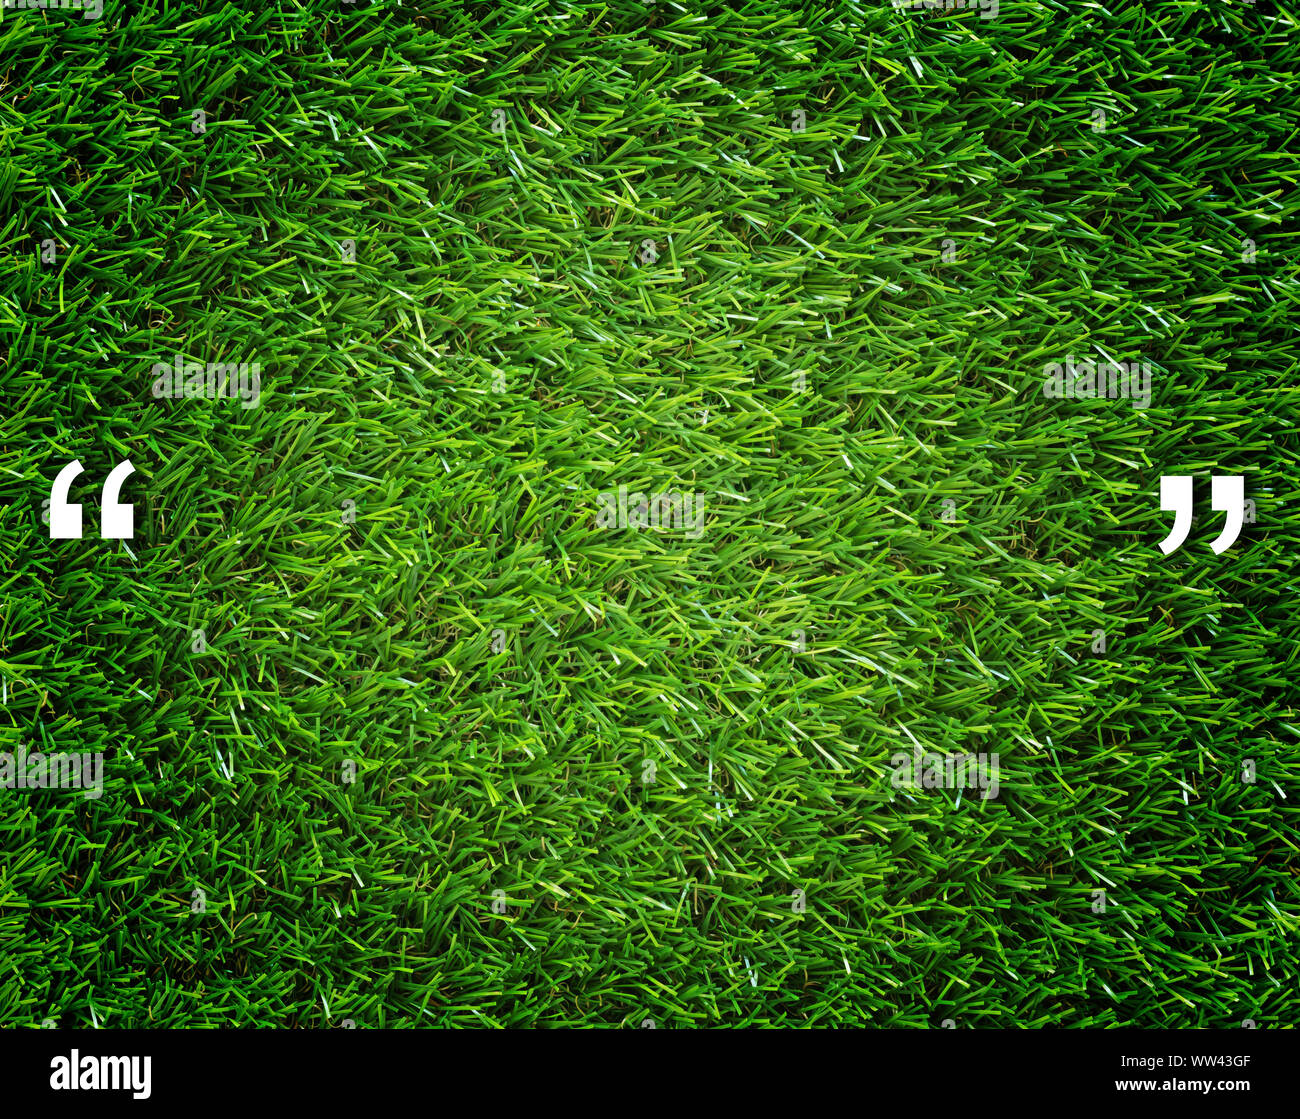 Comillas y copie el espacio sobre el pasto verde de fondo, el concepto de comunicación Foto de stock